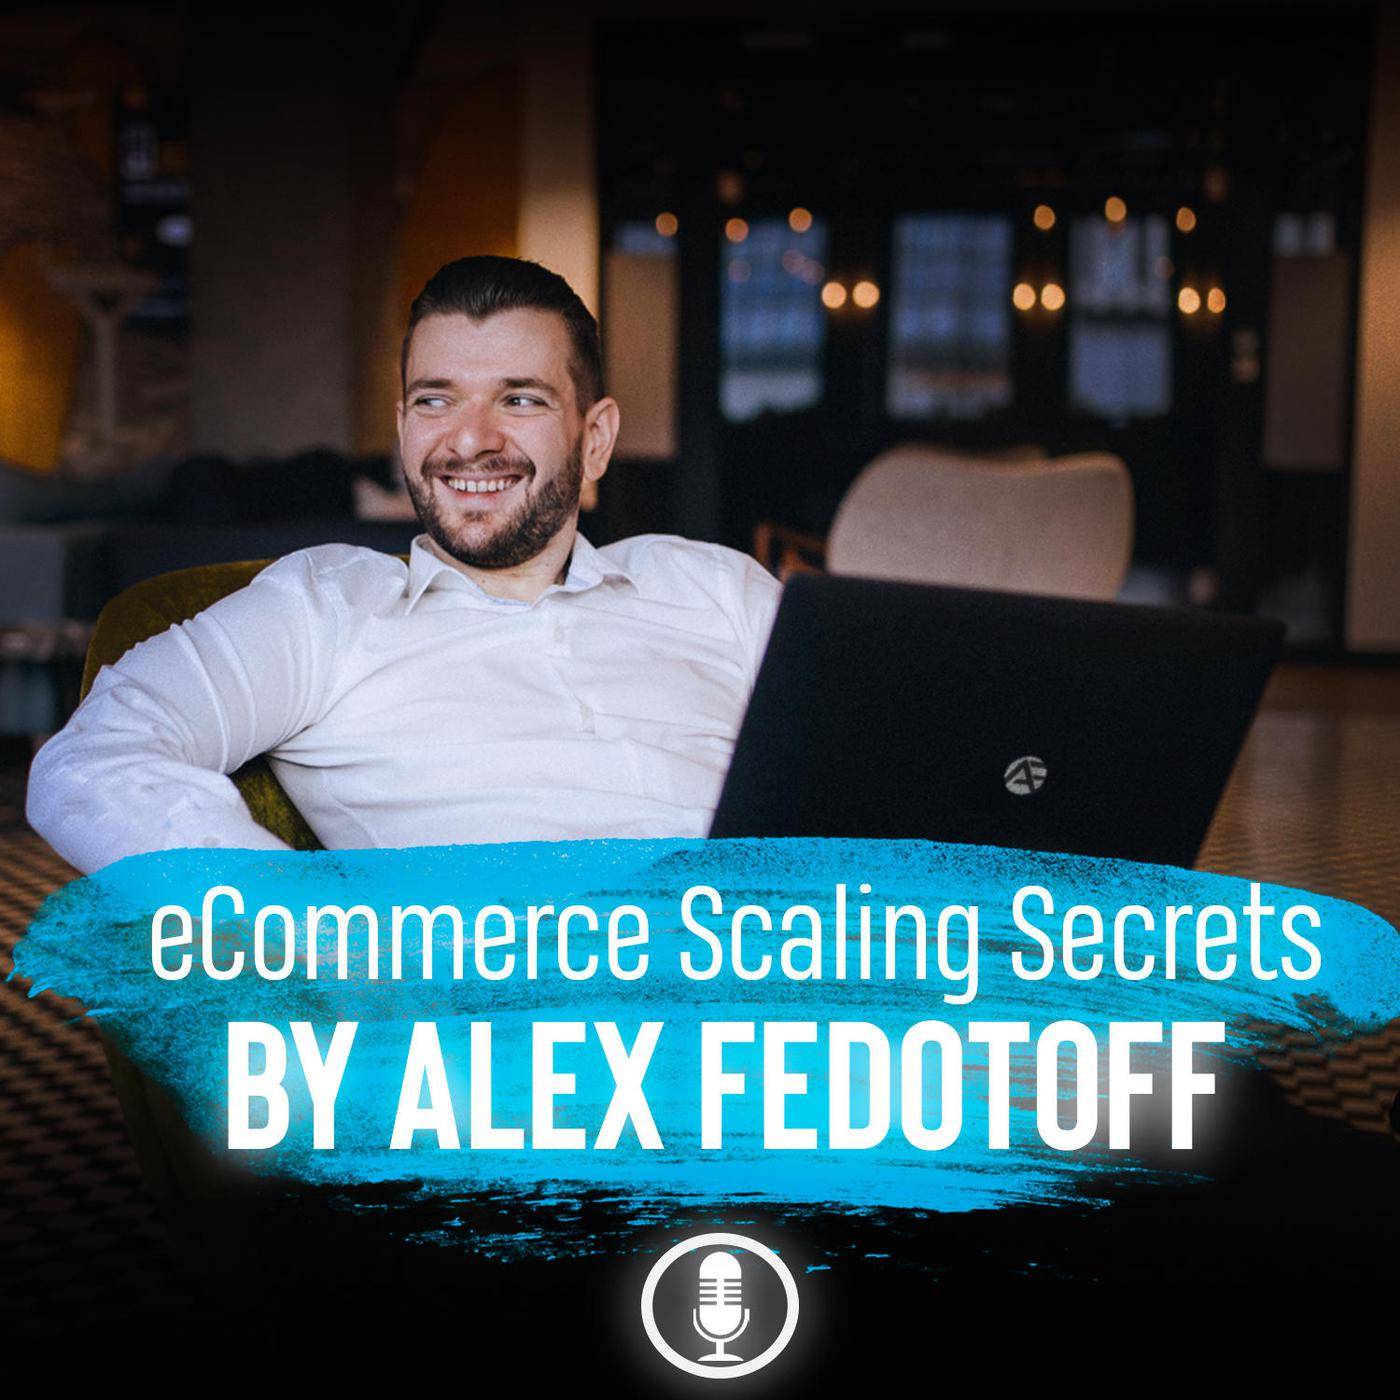 eCommerce scaling secrets podcast logo